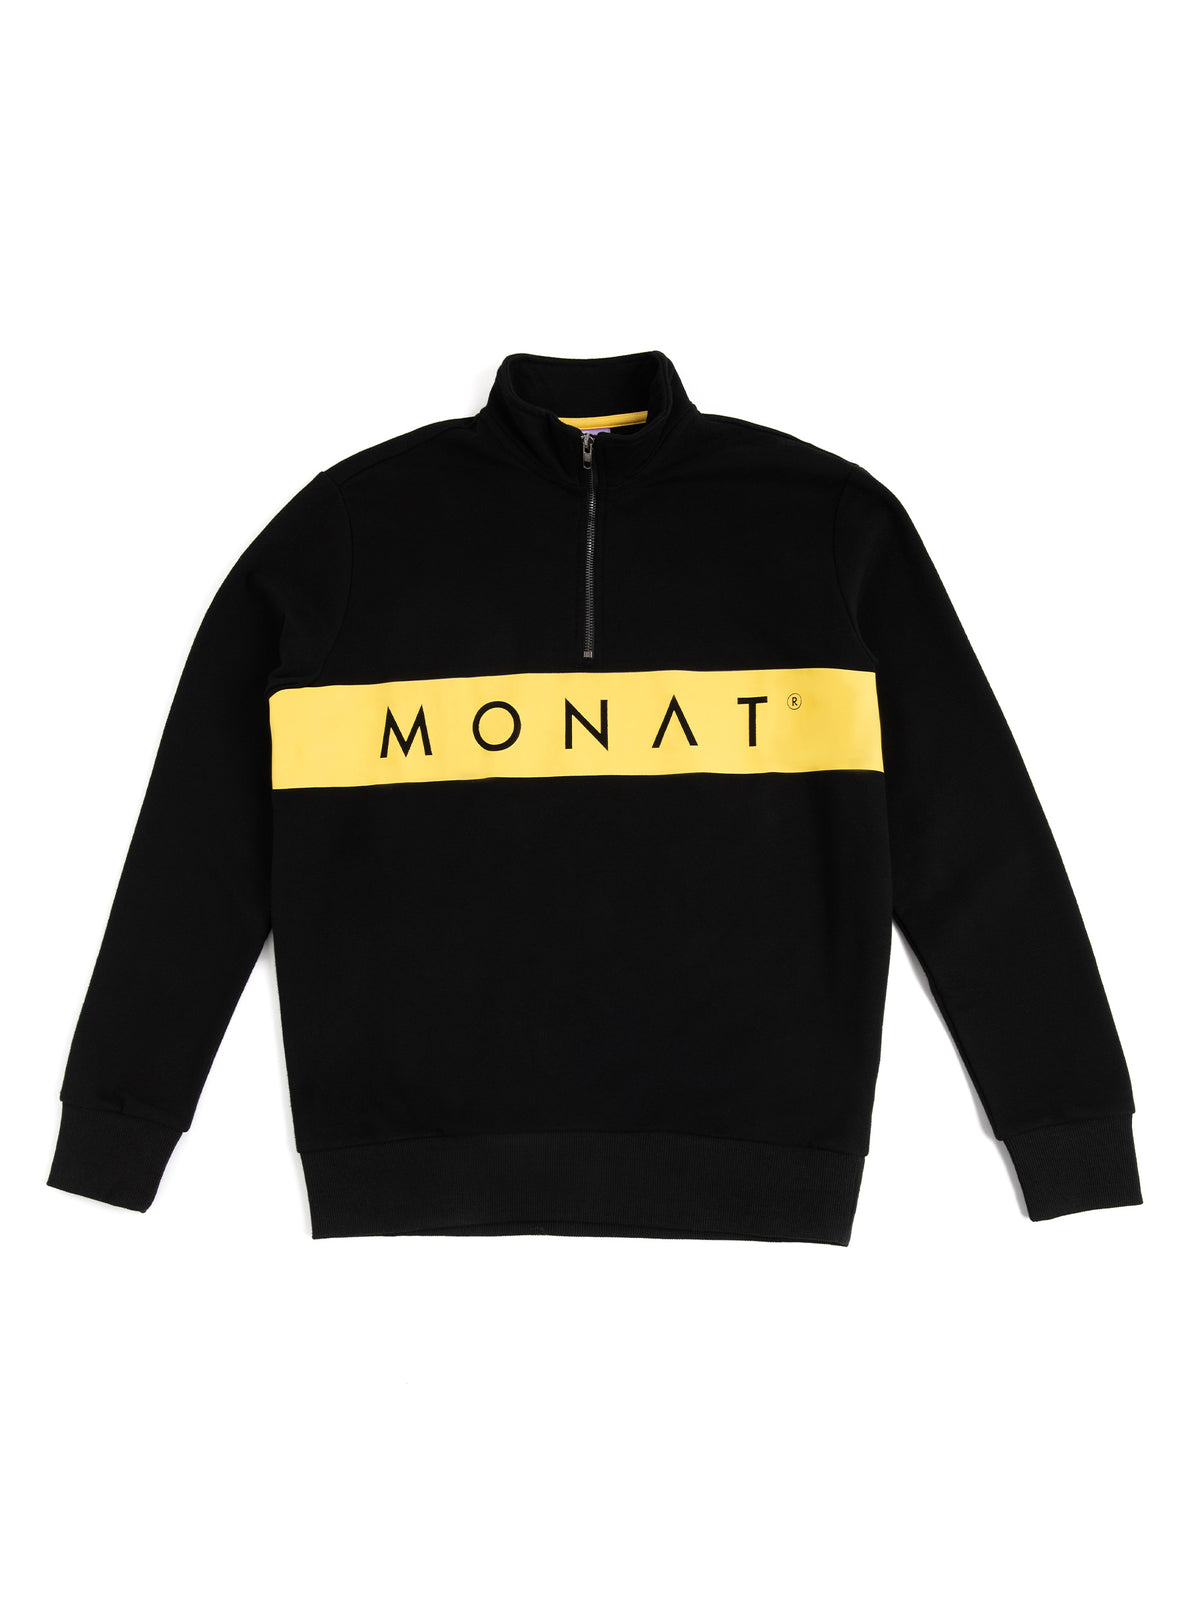 MONAT Unisex Half Zip Sweatshirt